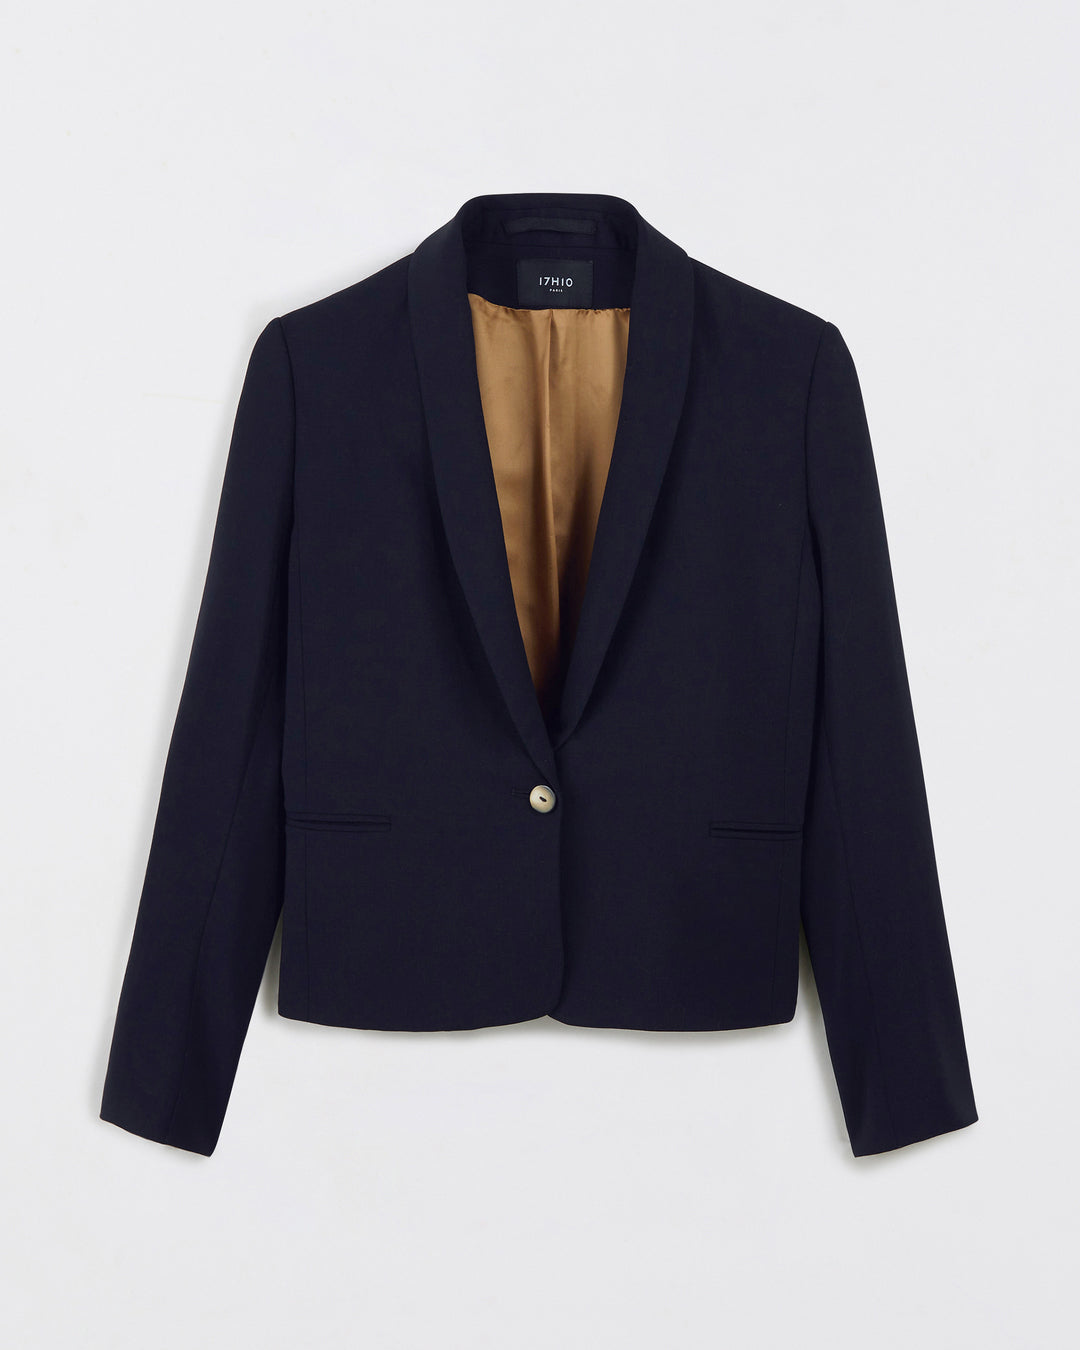 London Suit Jacket - Navy Blue